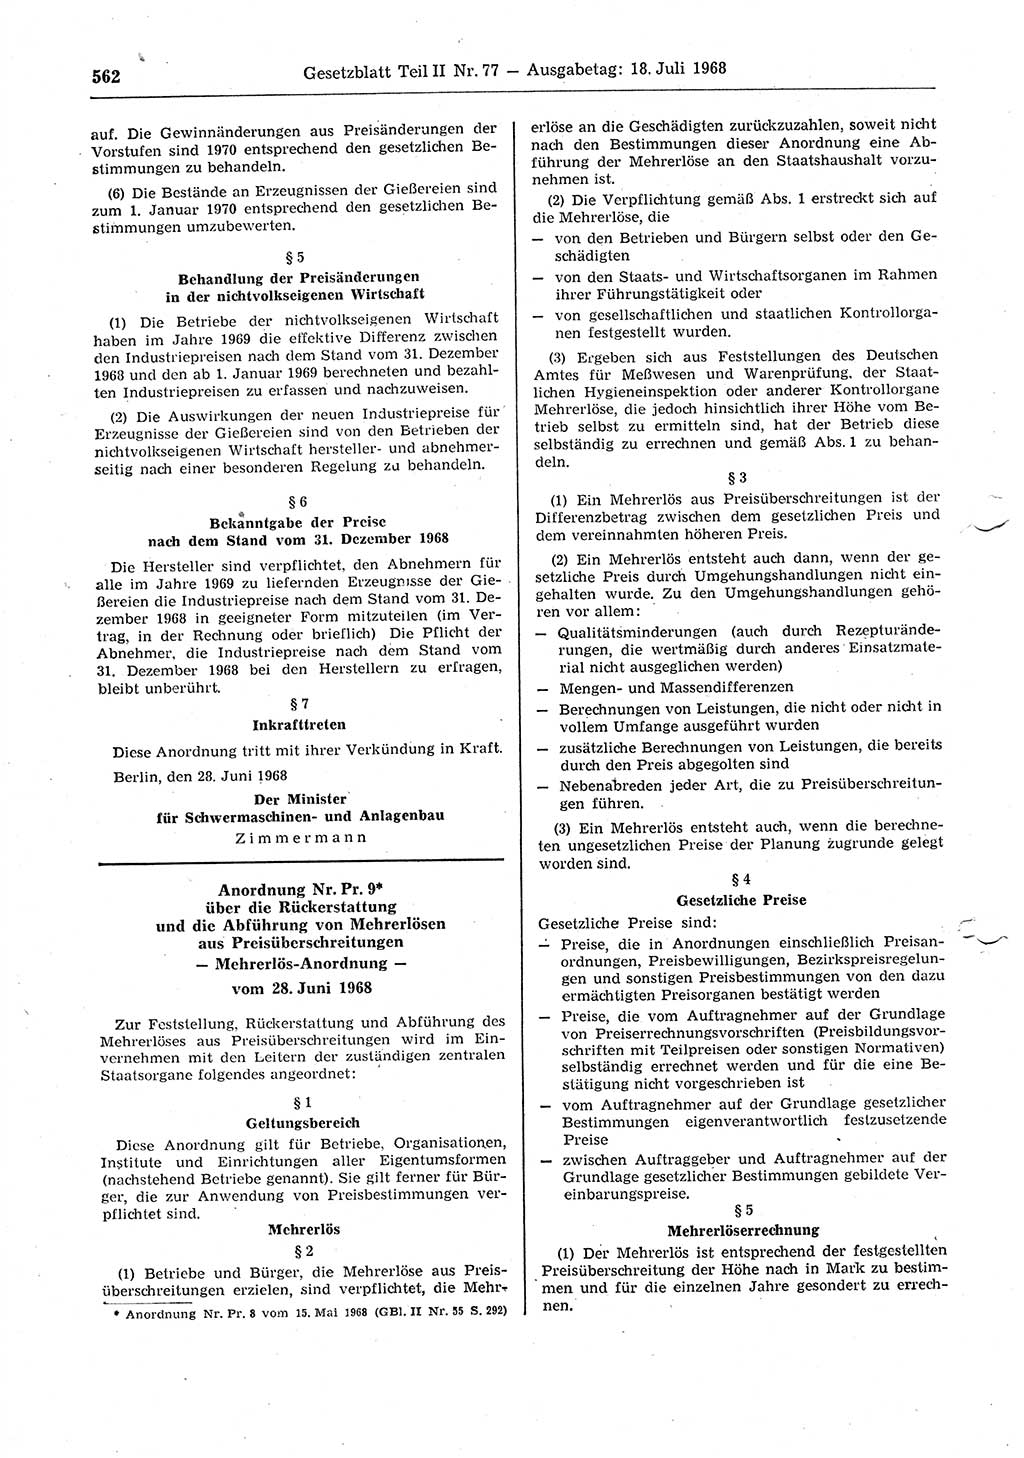 Gesetzblatt (GBl.) der Deutschen Demokratischen Republik (DDR) Teil ⅠⅠ 1968, Seite 562 (GBl. DDR ⅠⅠ 1968, S. 562)